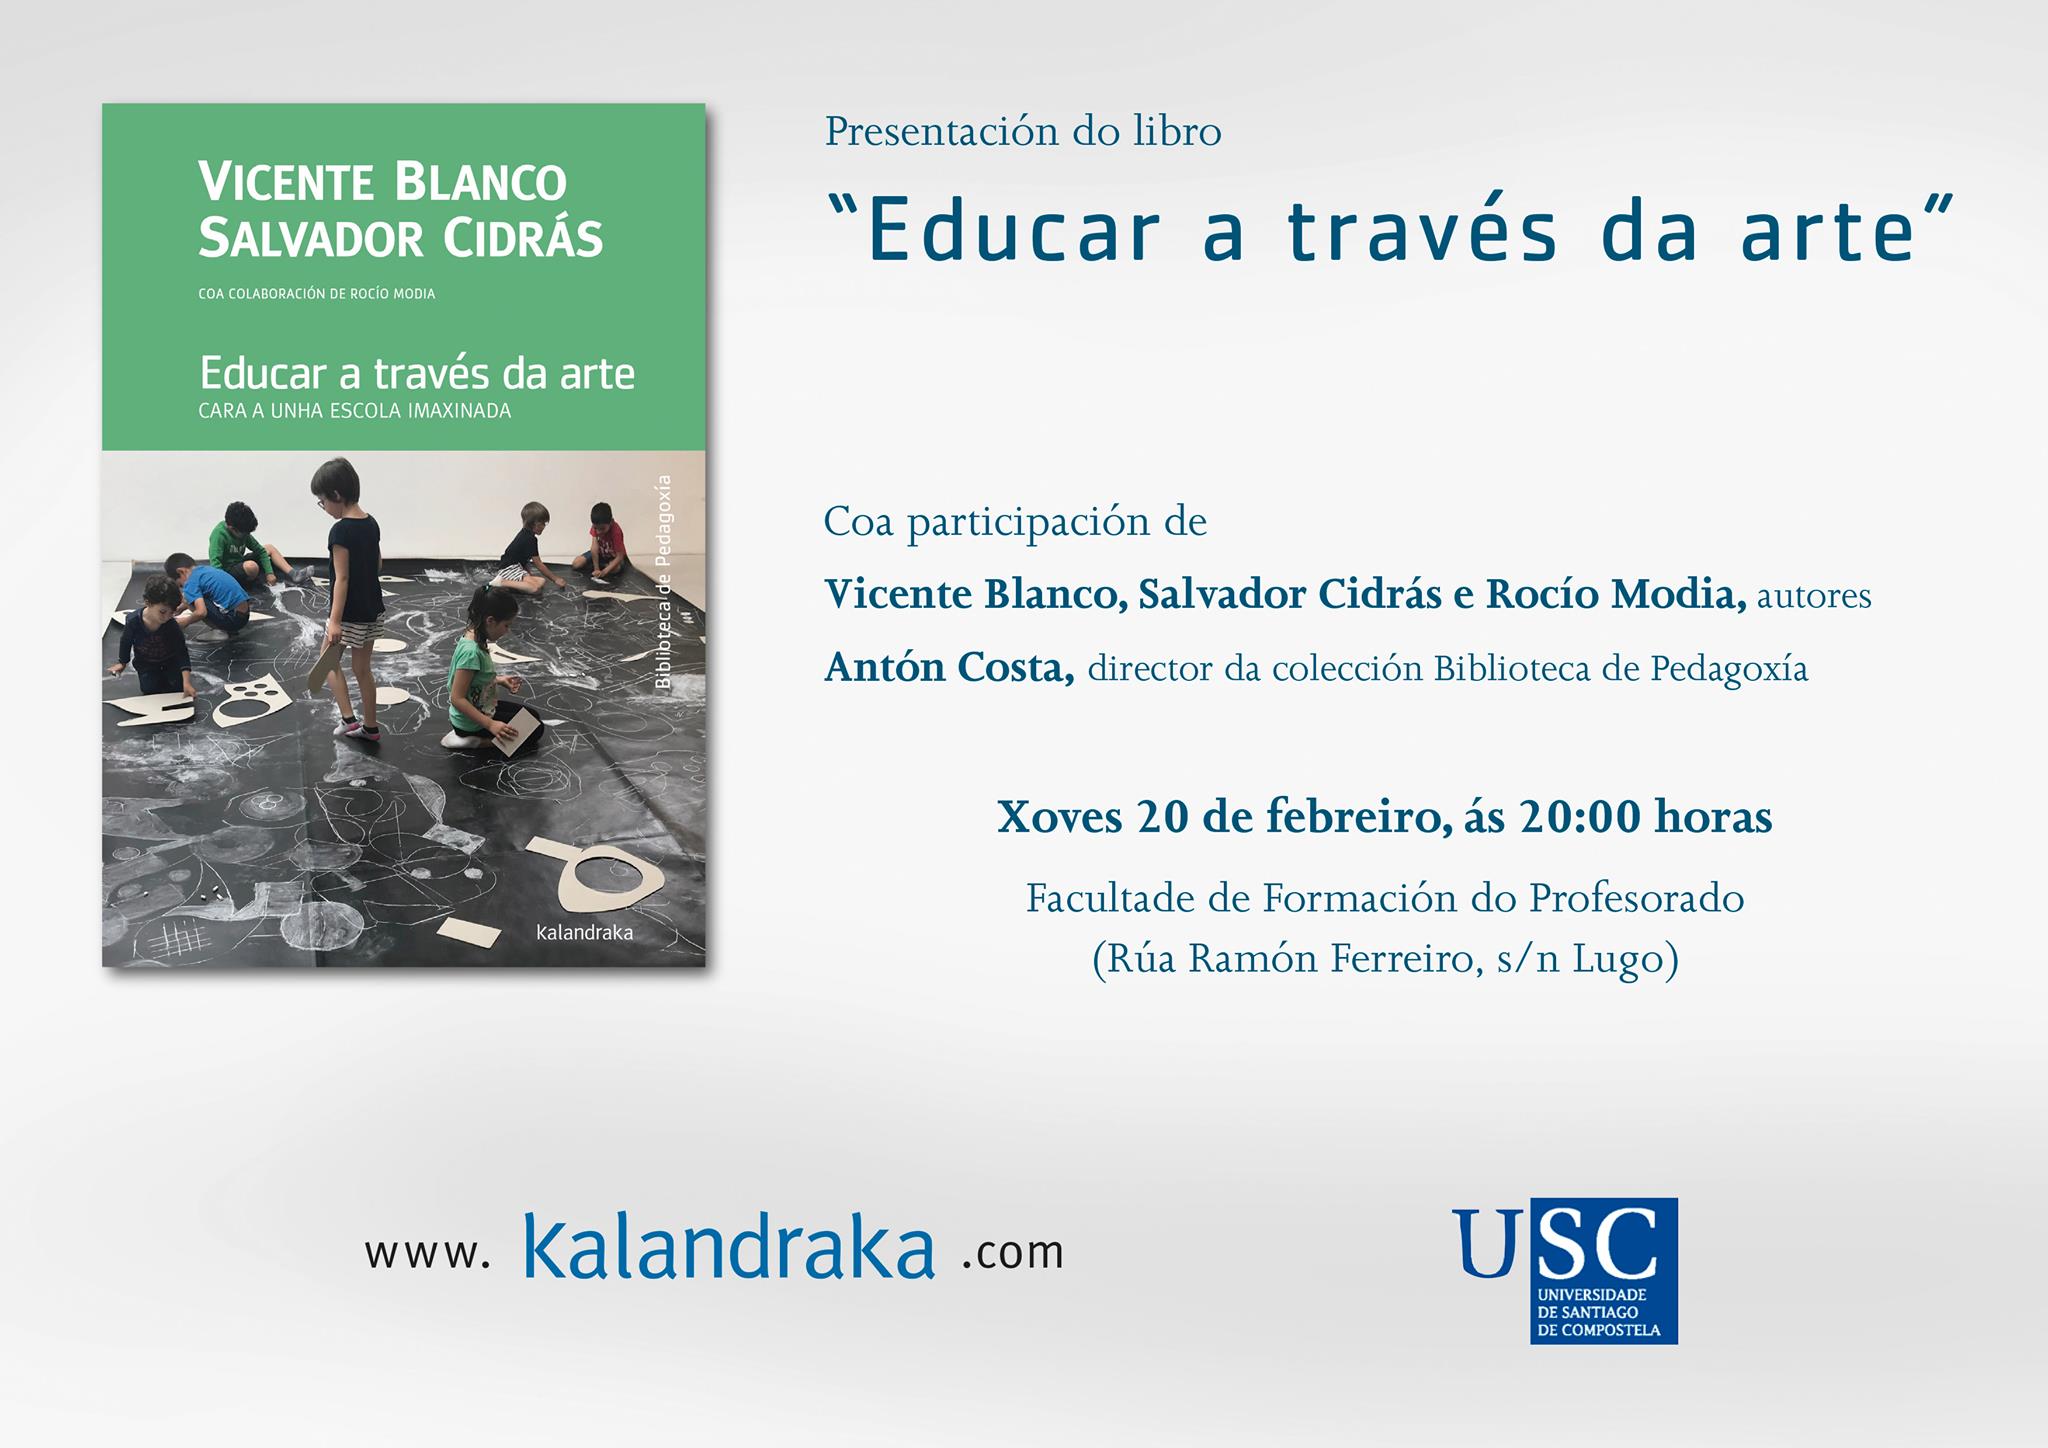 Cartel de la Presentación do libro "Educar a través da arte"